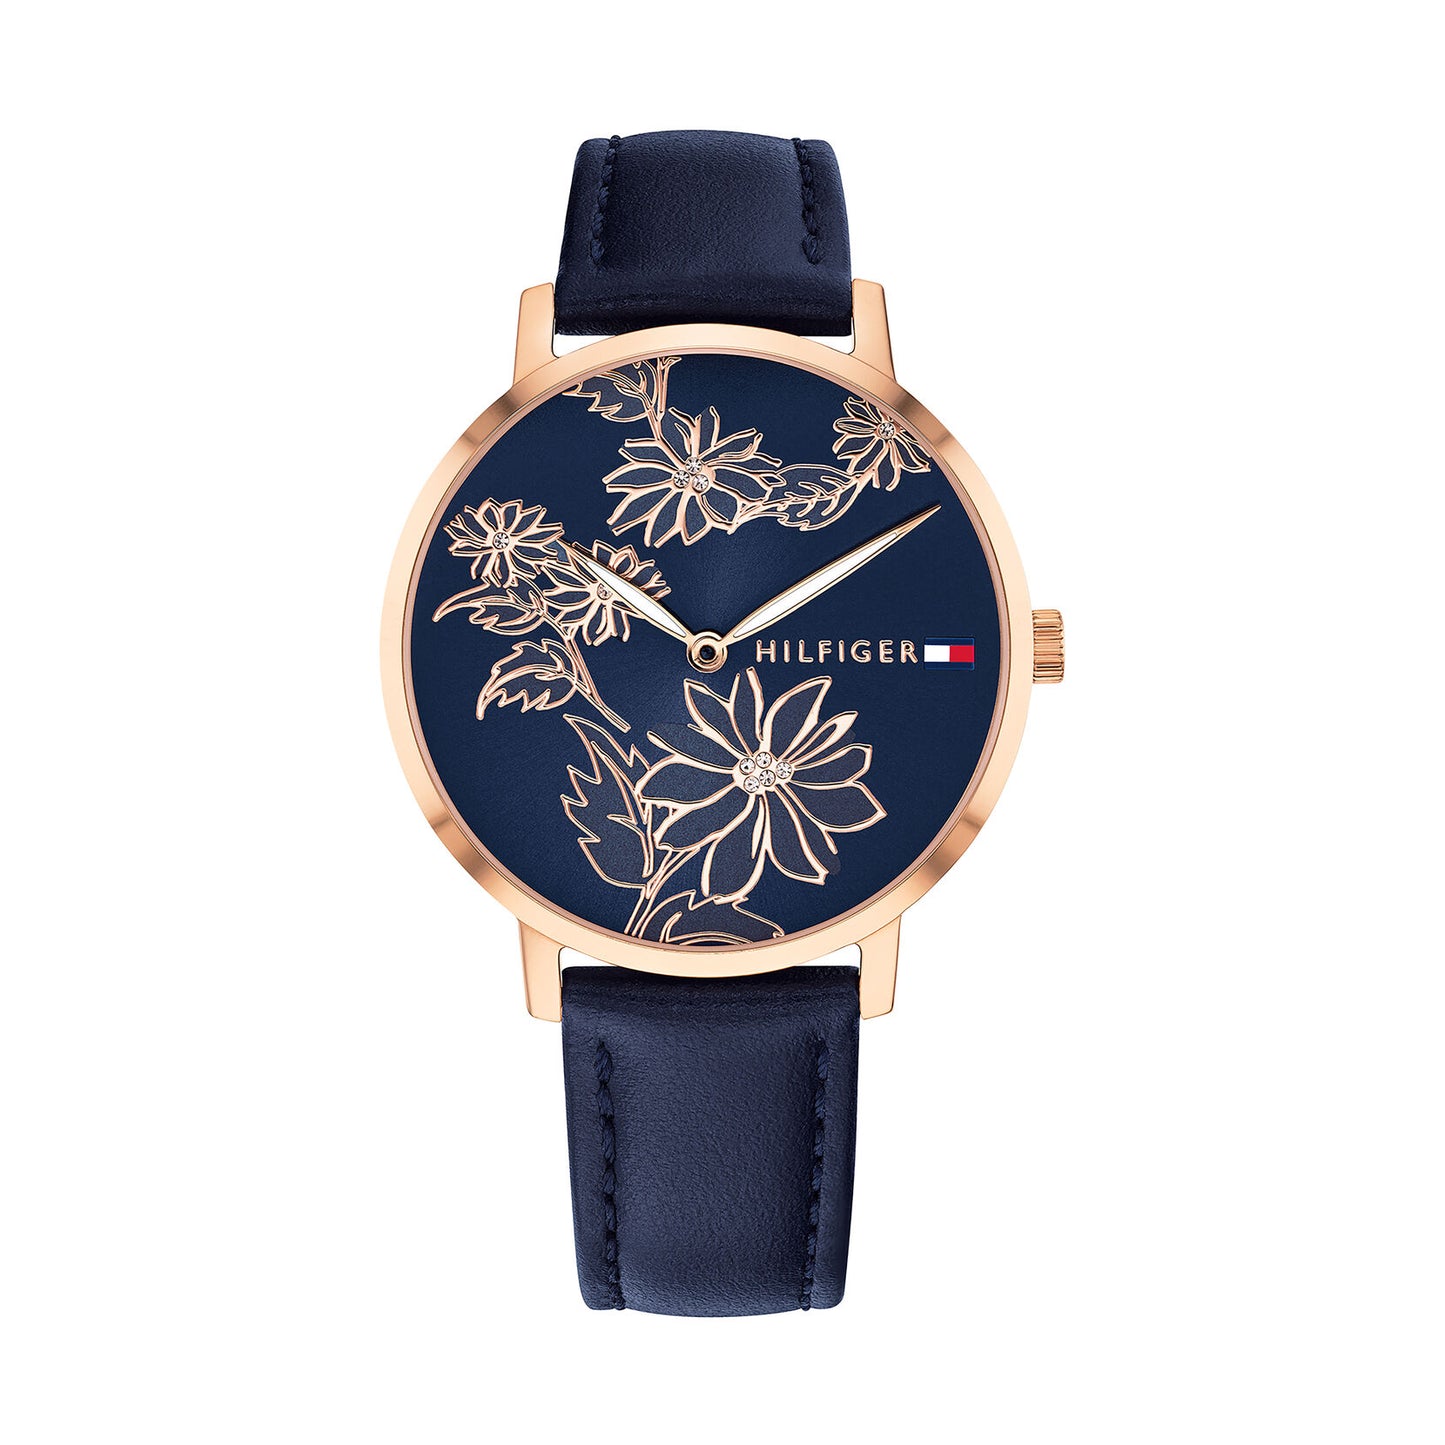 Relógio importado TOMMY HILFIGER feminino 35mm com pulseira de couro azul marinho e mostrador com detalhes florais